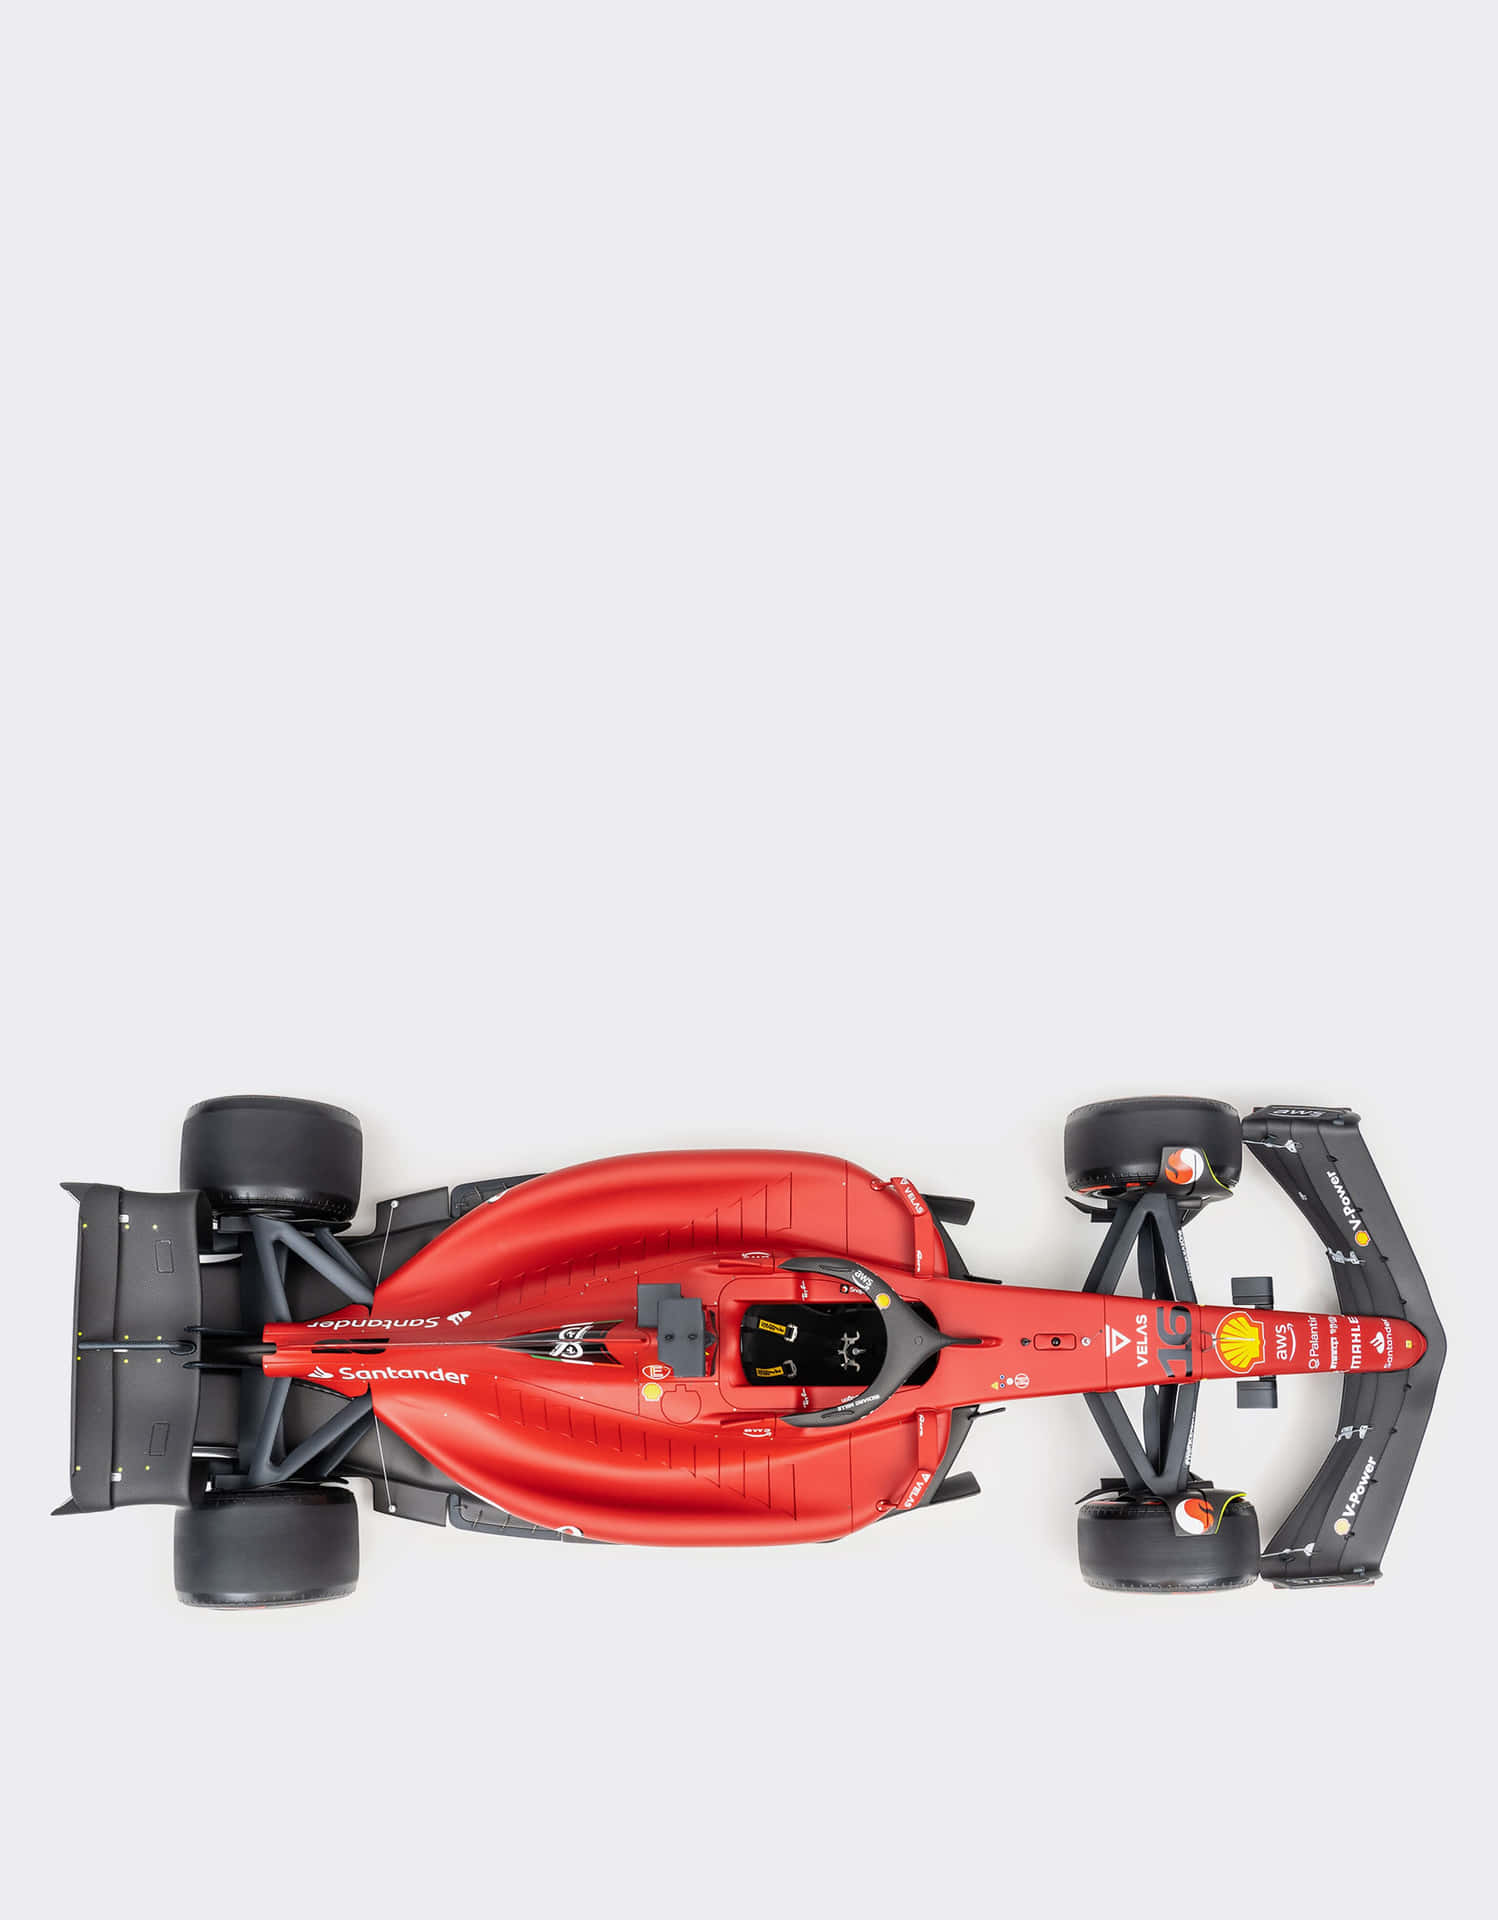 Red Ferrari F1 Racecar Top View Wallpaper